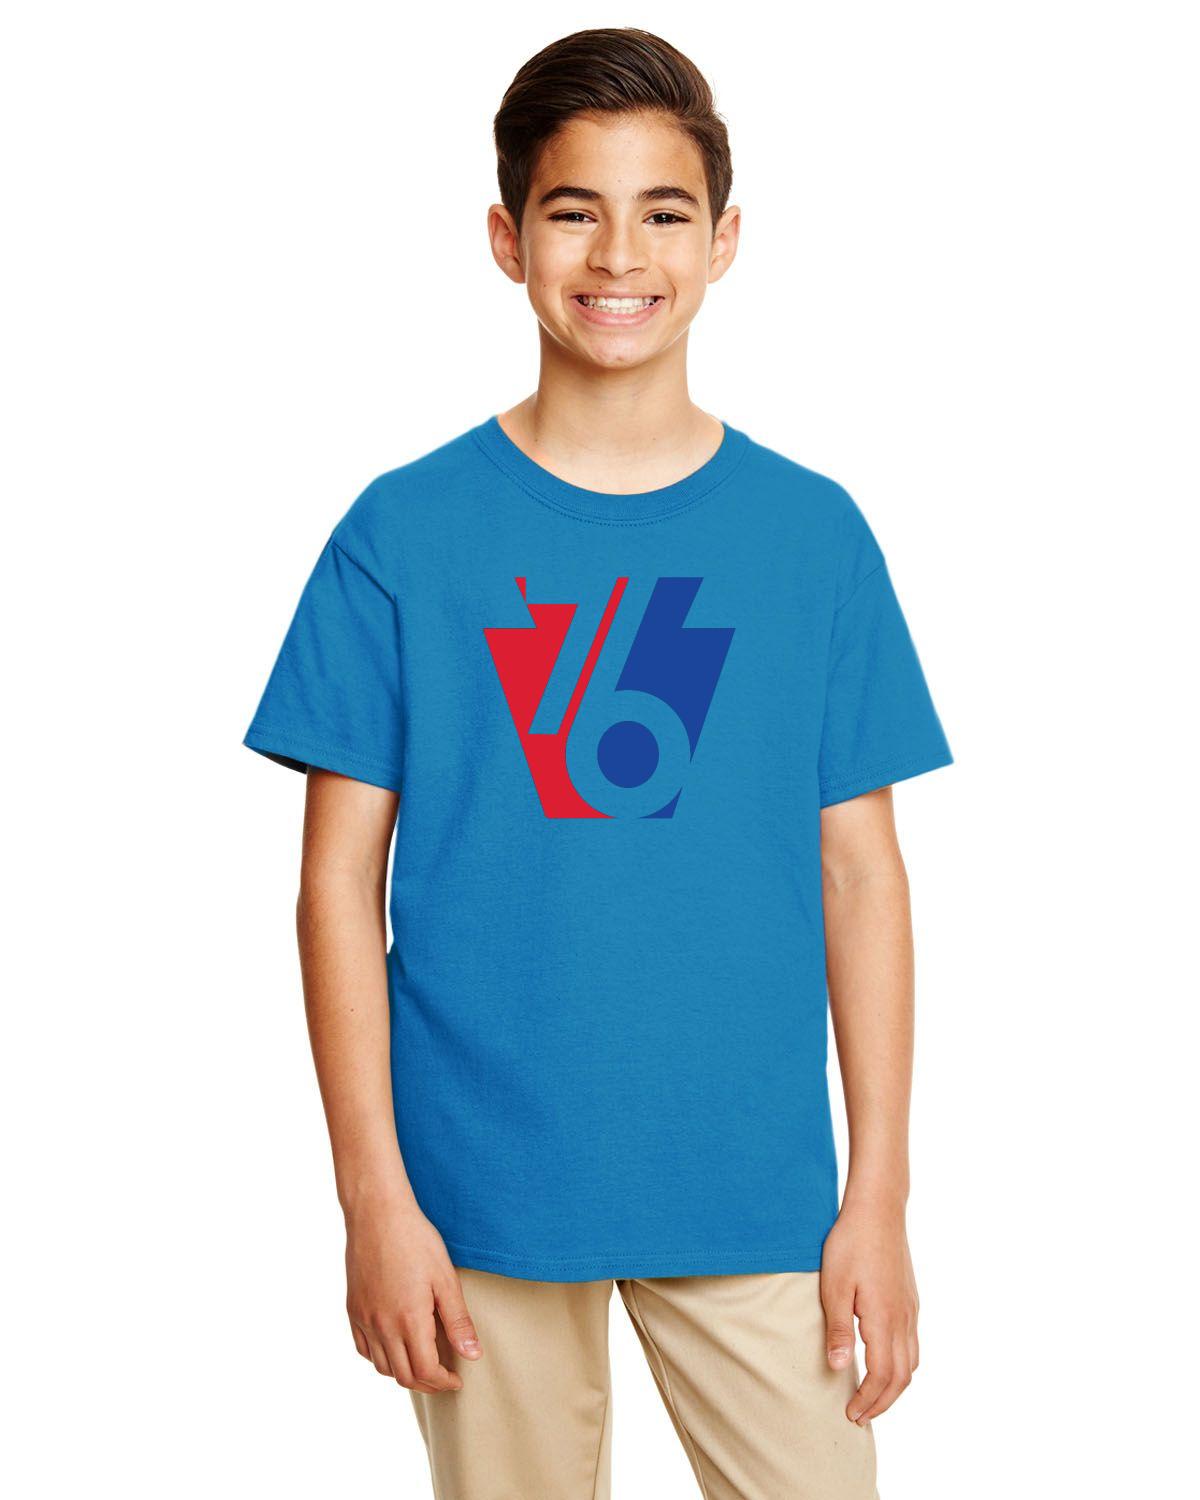 Keystone 76 Youth Tee (Gildan Youth Softstyle 7.5 oz./lin. yd. T-Shirt | G645B)